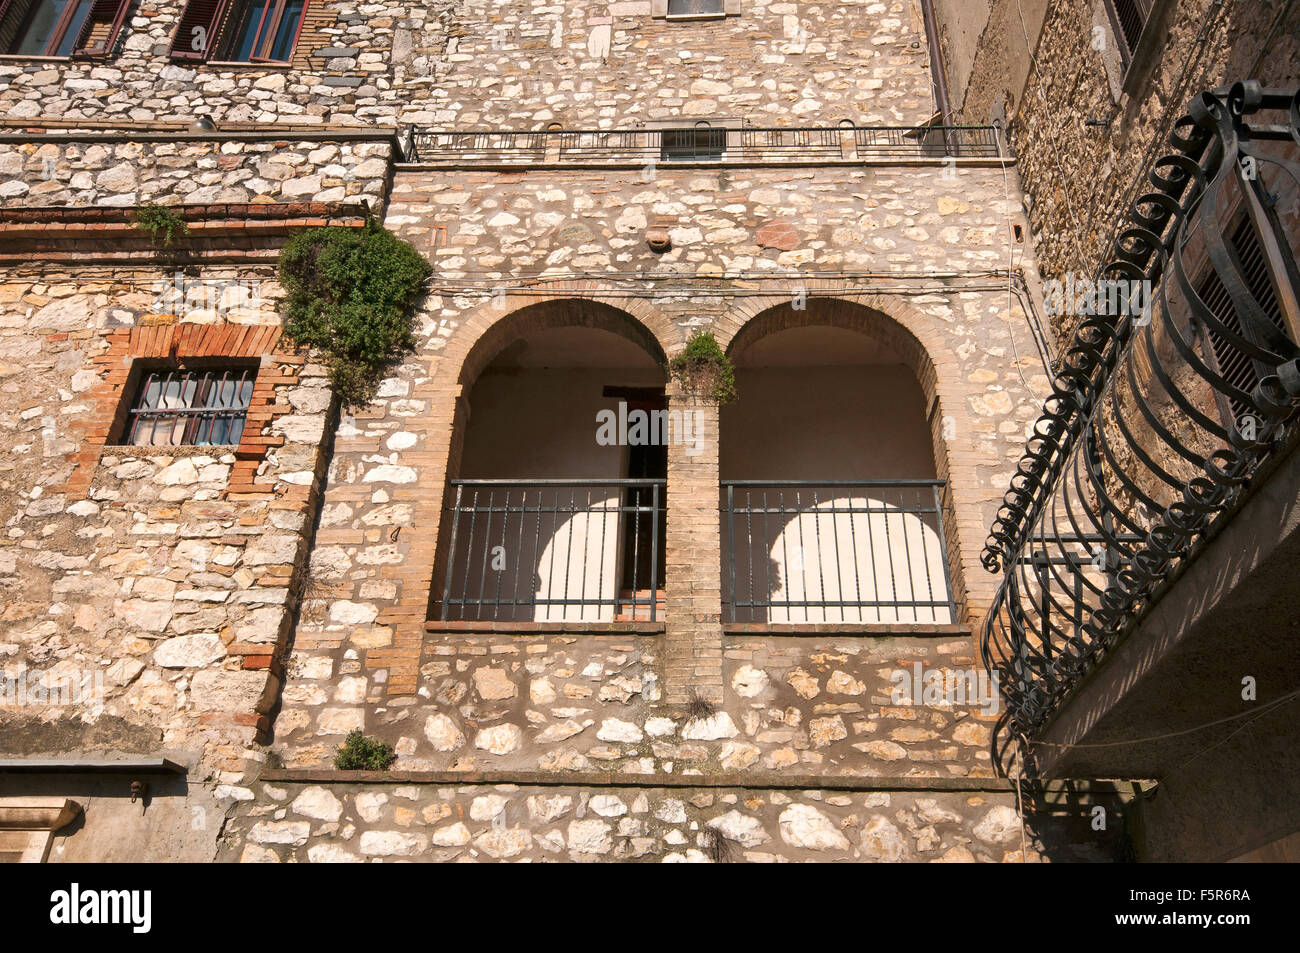 Ancient building in Montecchio, Terni, Umbria, Italy Stock Photo